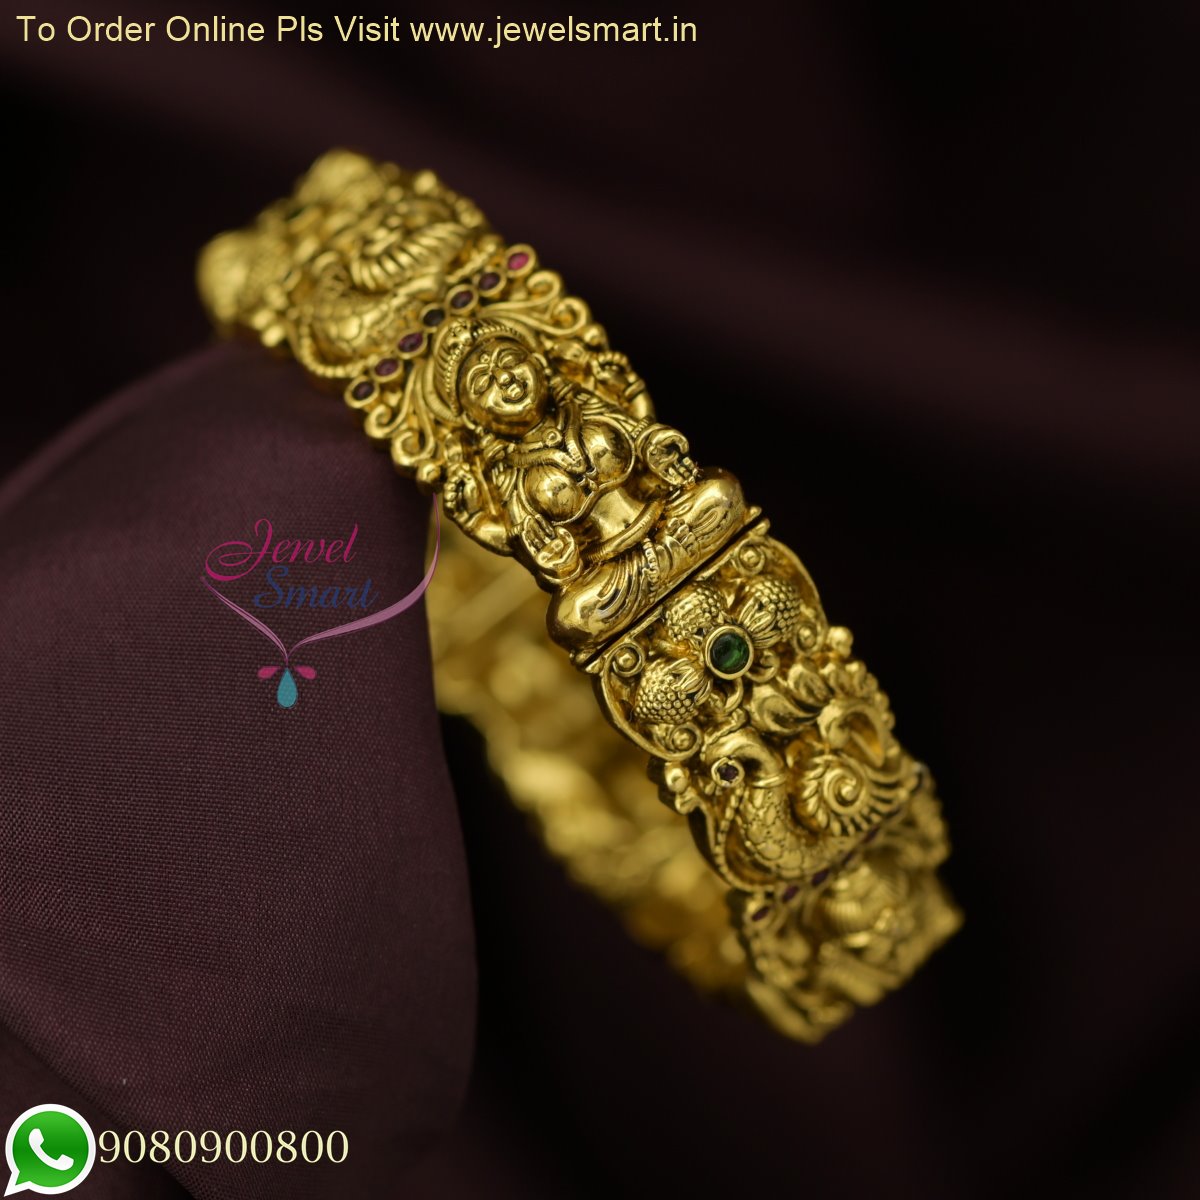 Traditional Gold Kada For Women by Niscka - Best Bracelets for Women